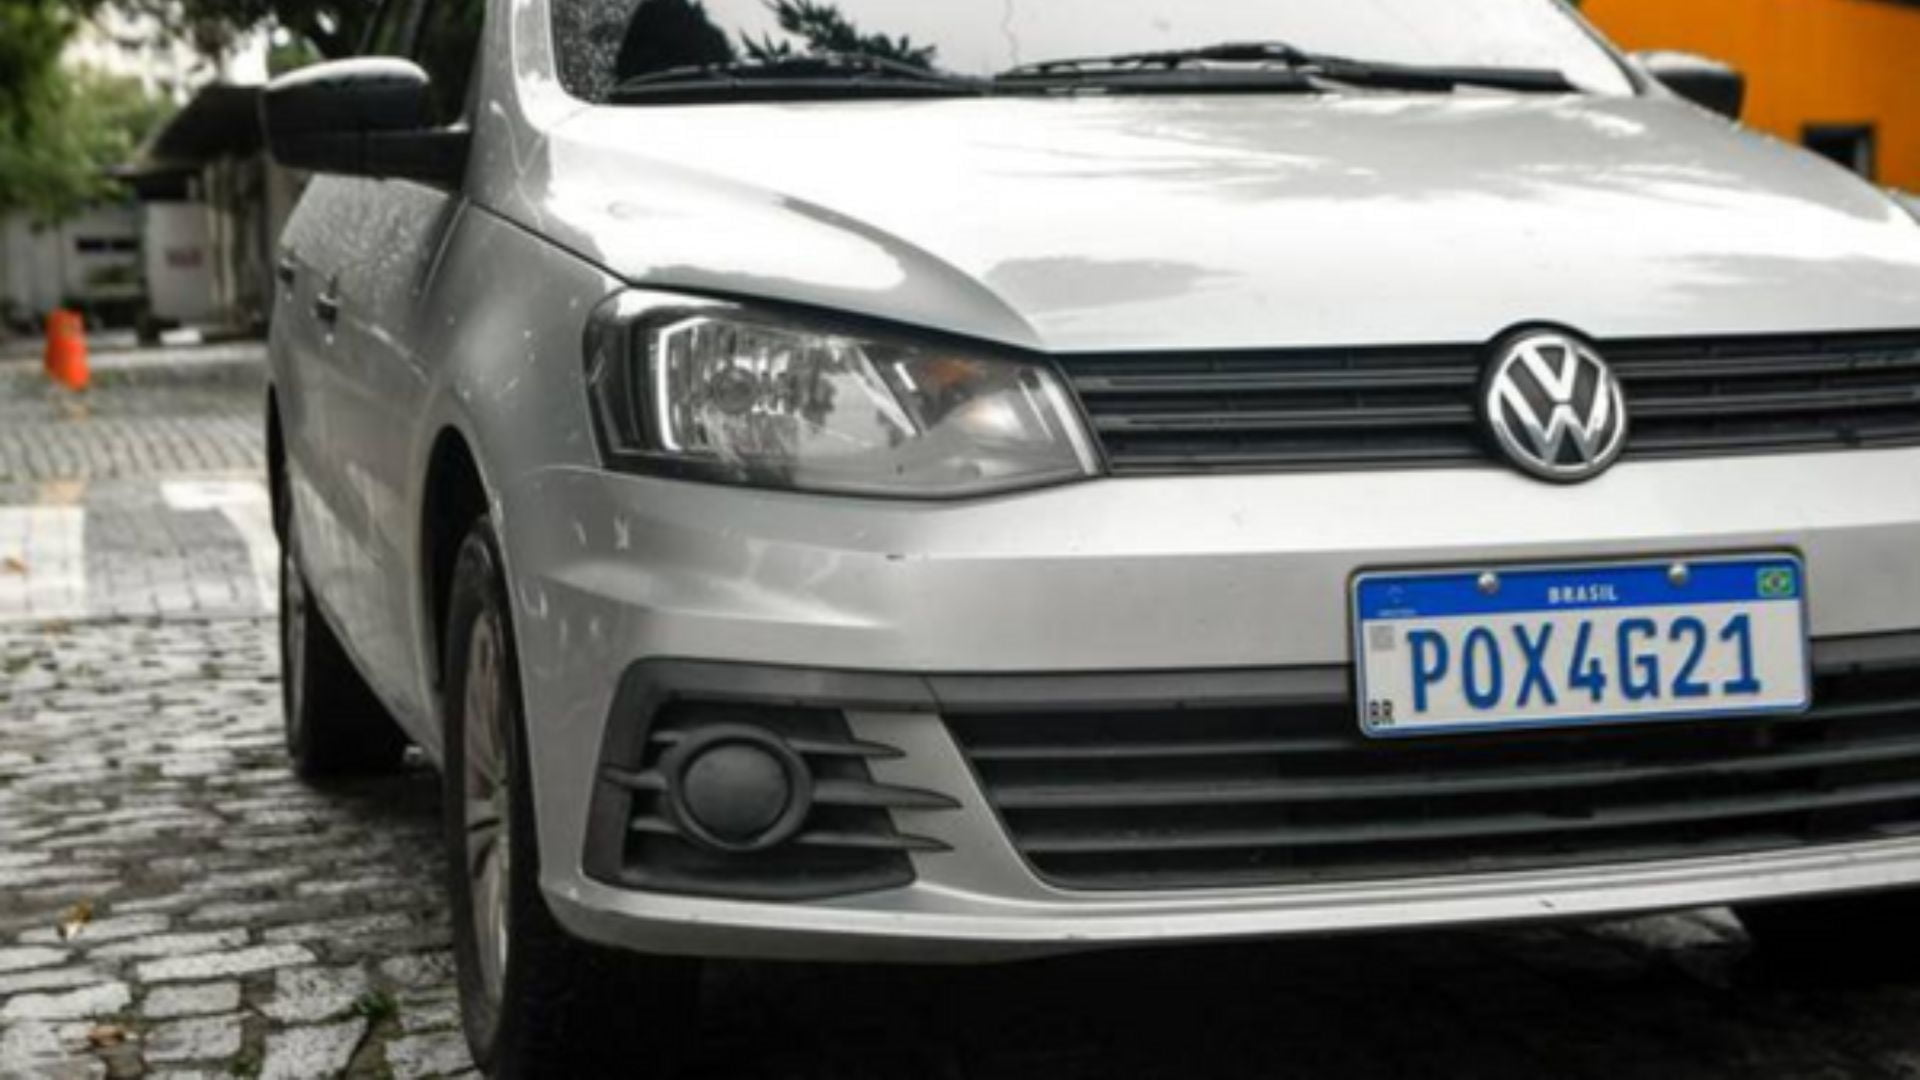 CAE aprova volta de informação sobre estado e município em placas de carros. Foto: Governo do Ceará